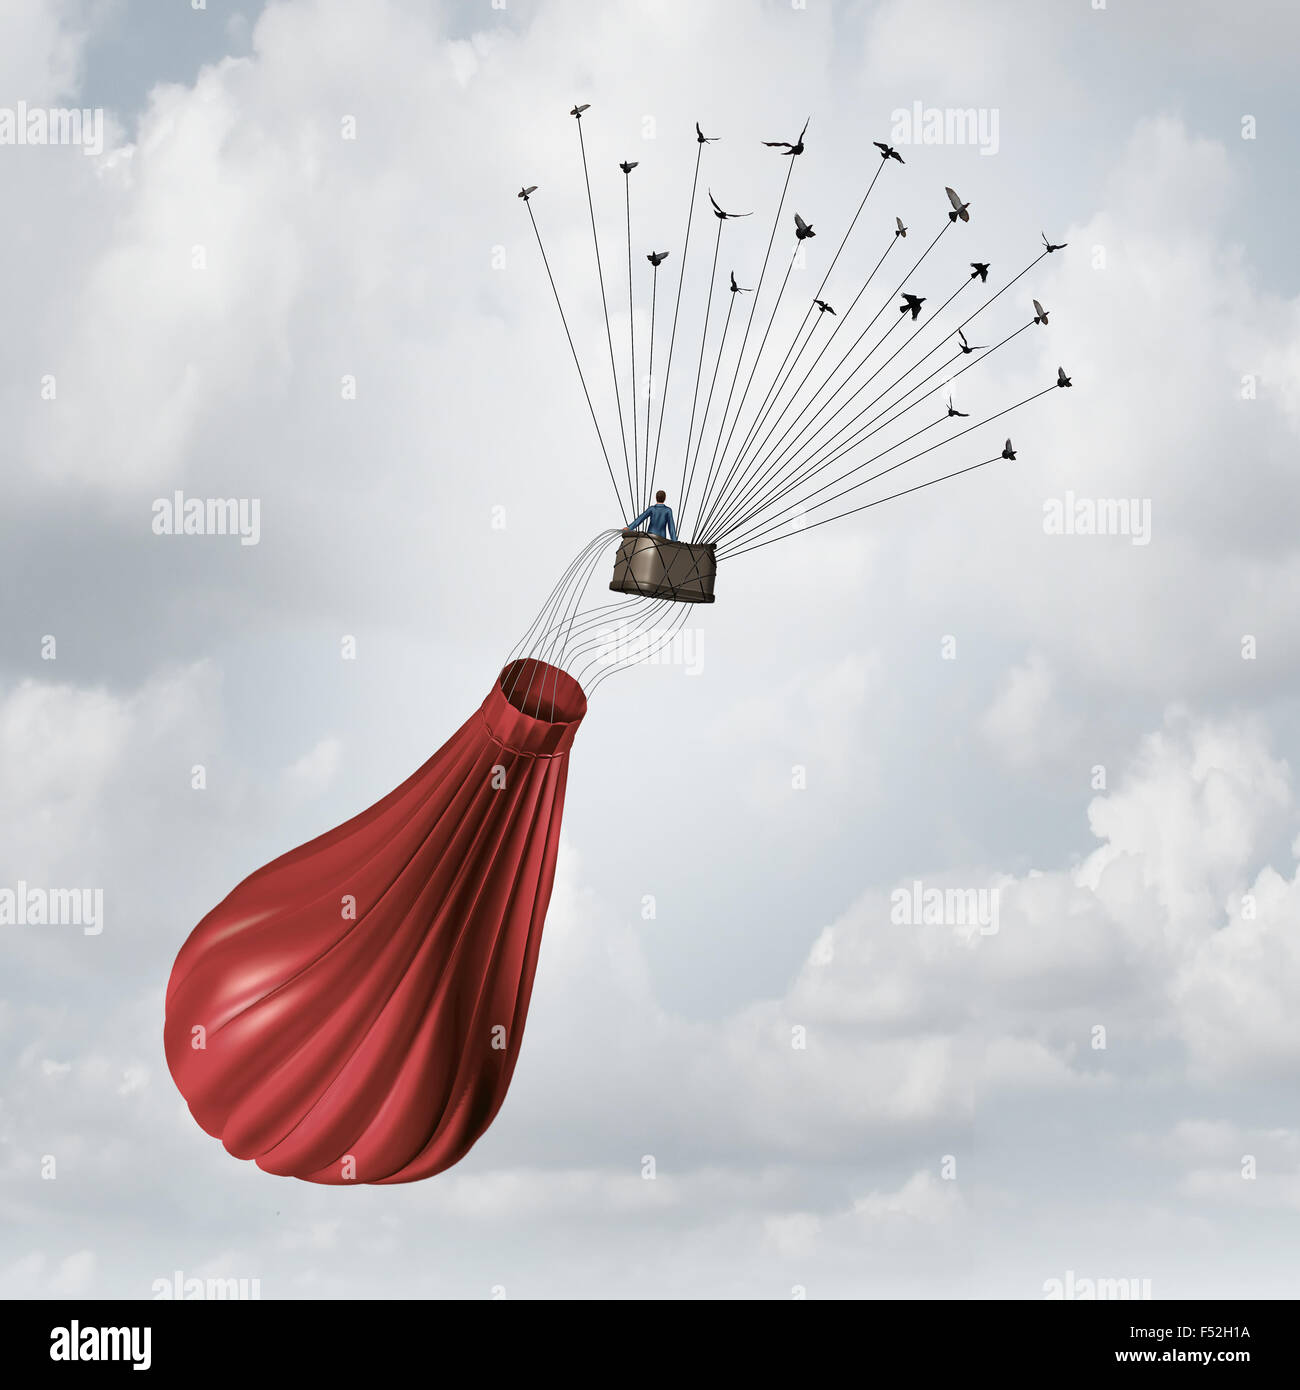 Business Team Lösung Konzept und Teamwork Erholung Symbol als Geschäftsmann in einer entleerten gebrochen roten Heißluftballon gerettet und gerettet von einer Gruppe von fliegenden Vögel ziehen das Objekt nach oben mit Drähten. Stockfoto